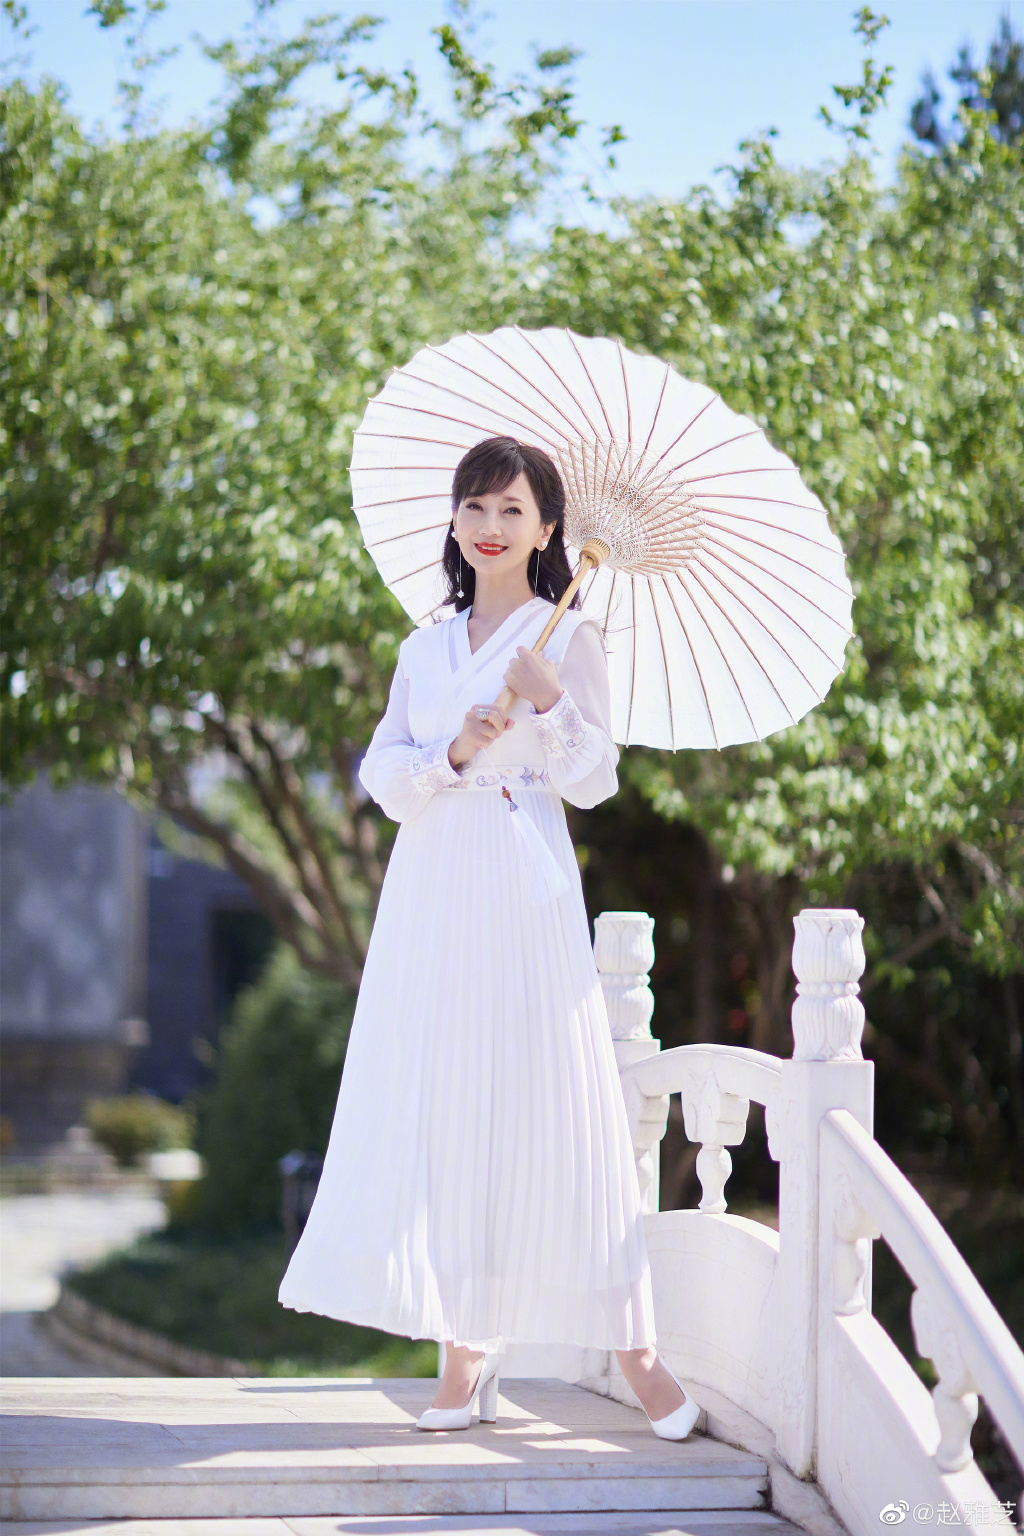 赵雅芝穿白裙优雅迷人 撑油纸伞漫步桥上  第1张